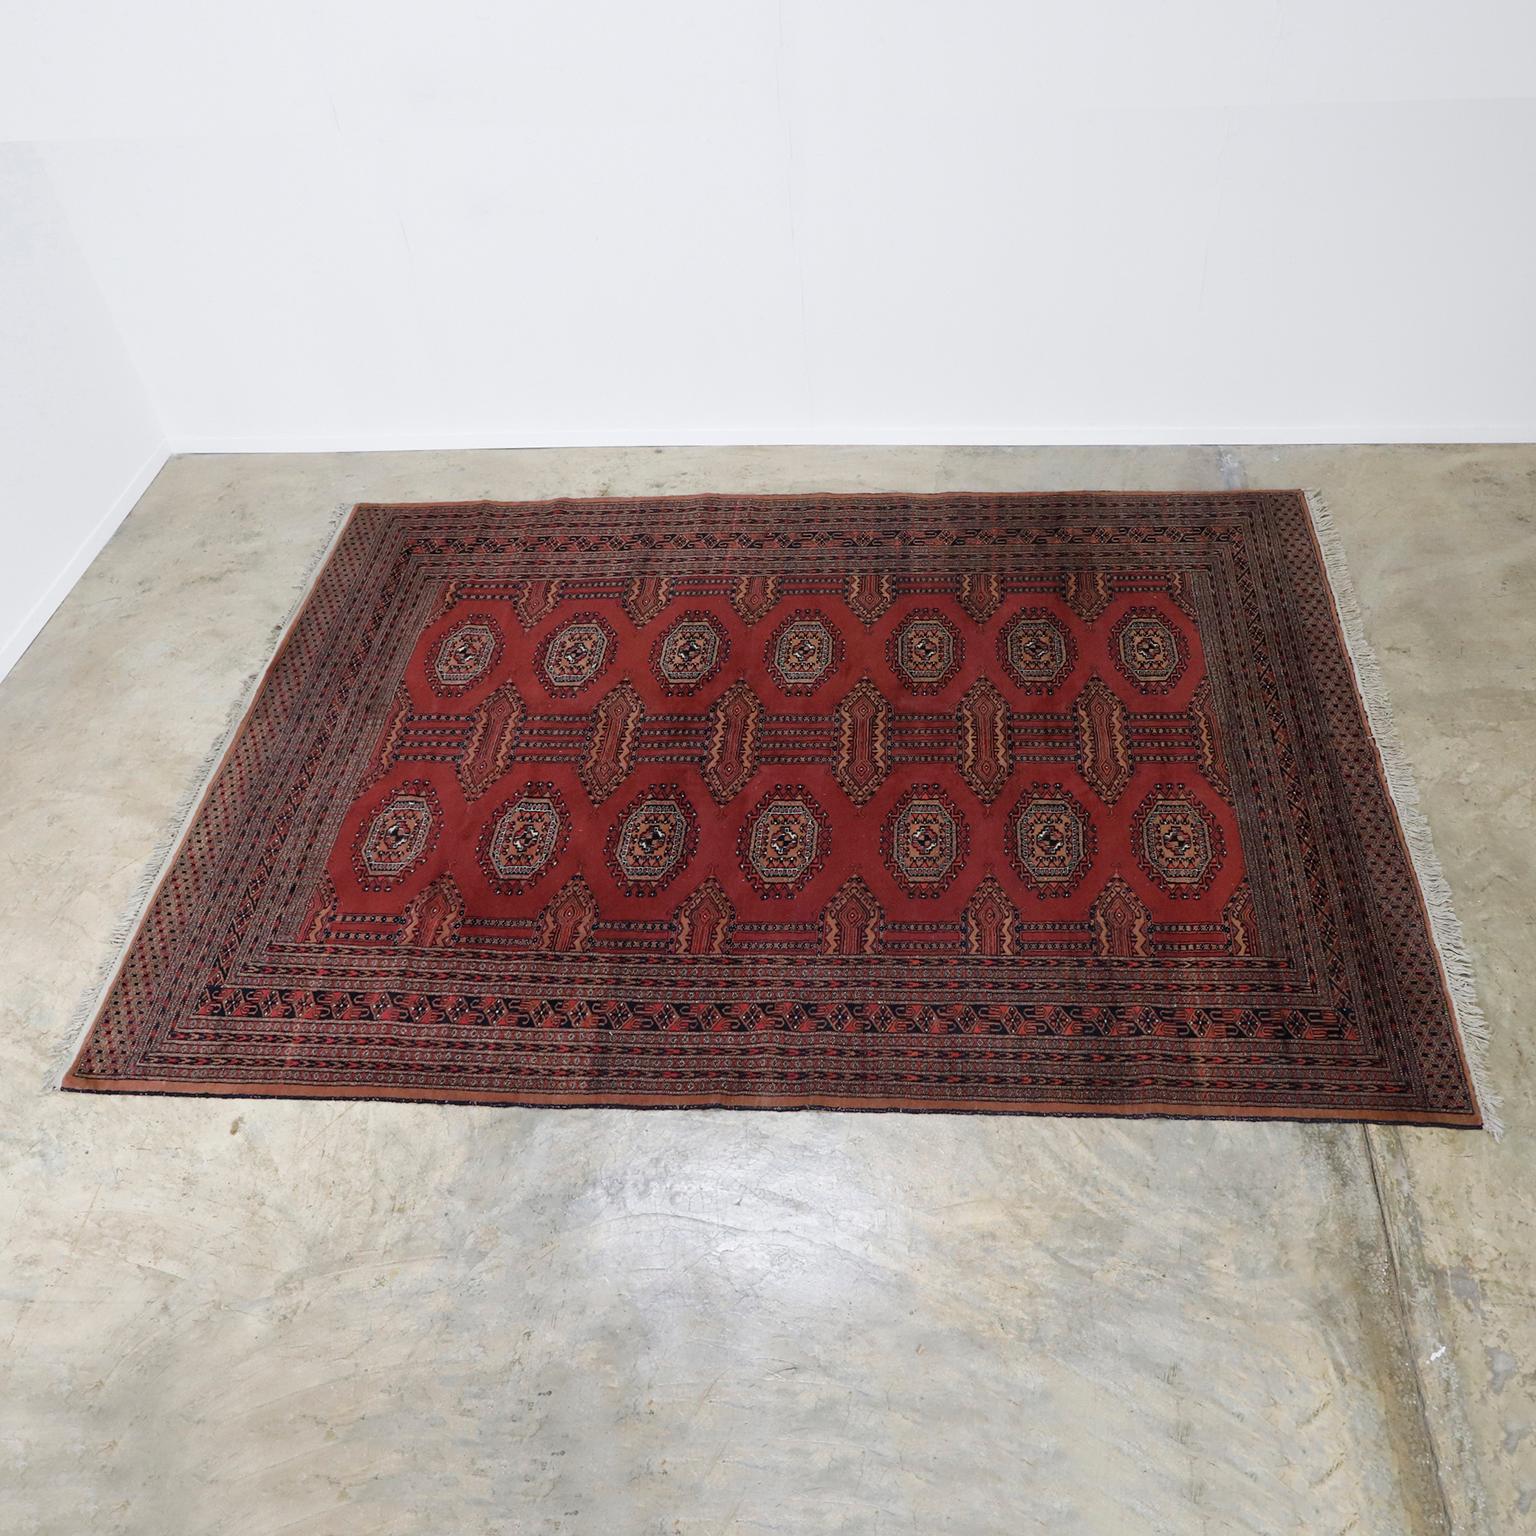 Persischer Vintage-Teppich. Toller Vintage-Zustand.
